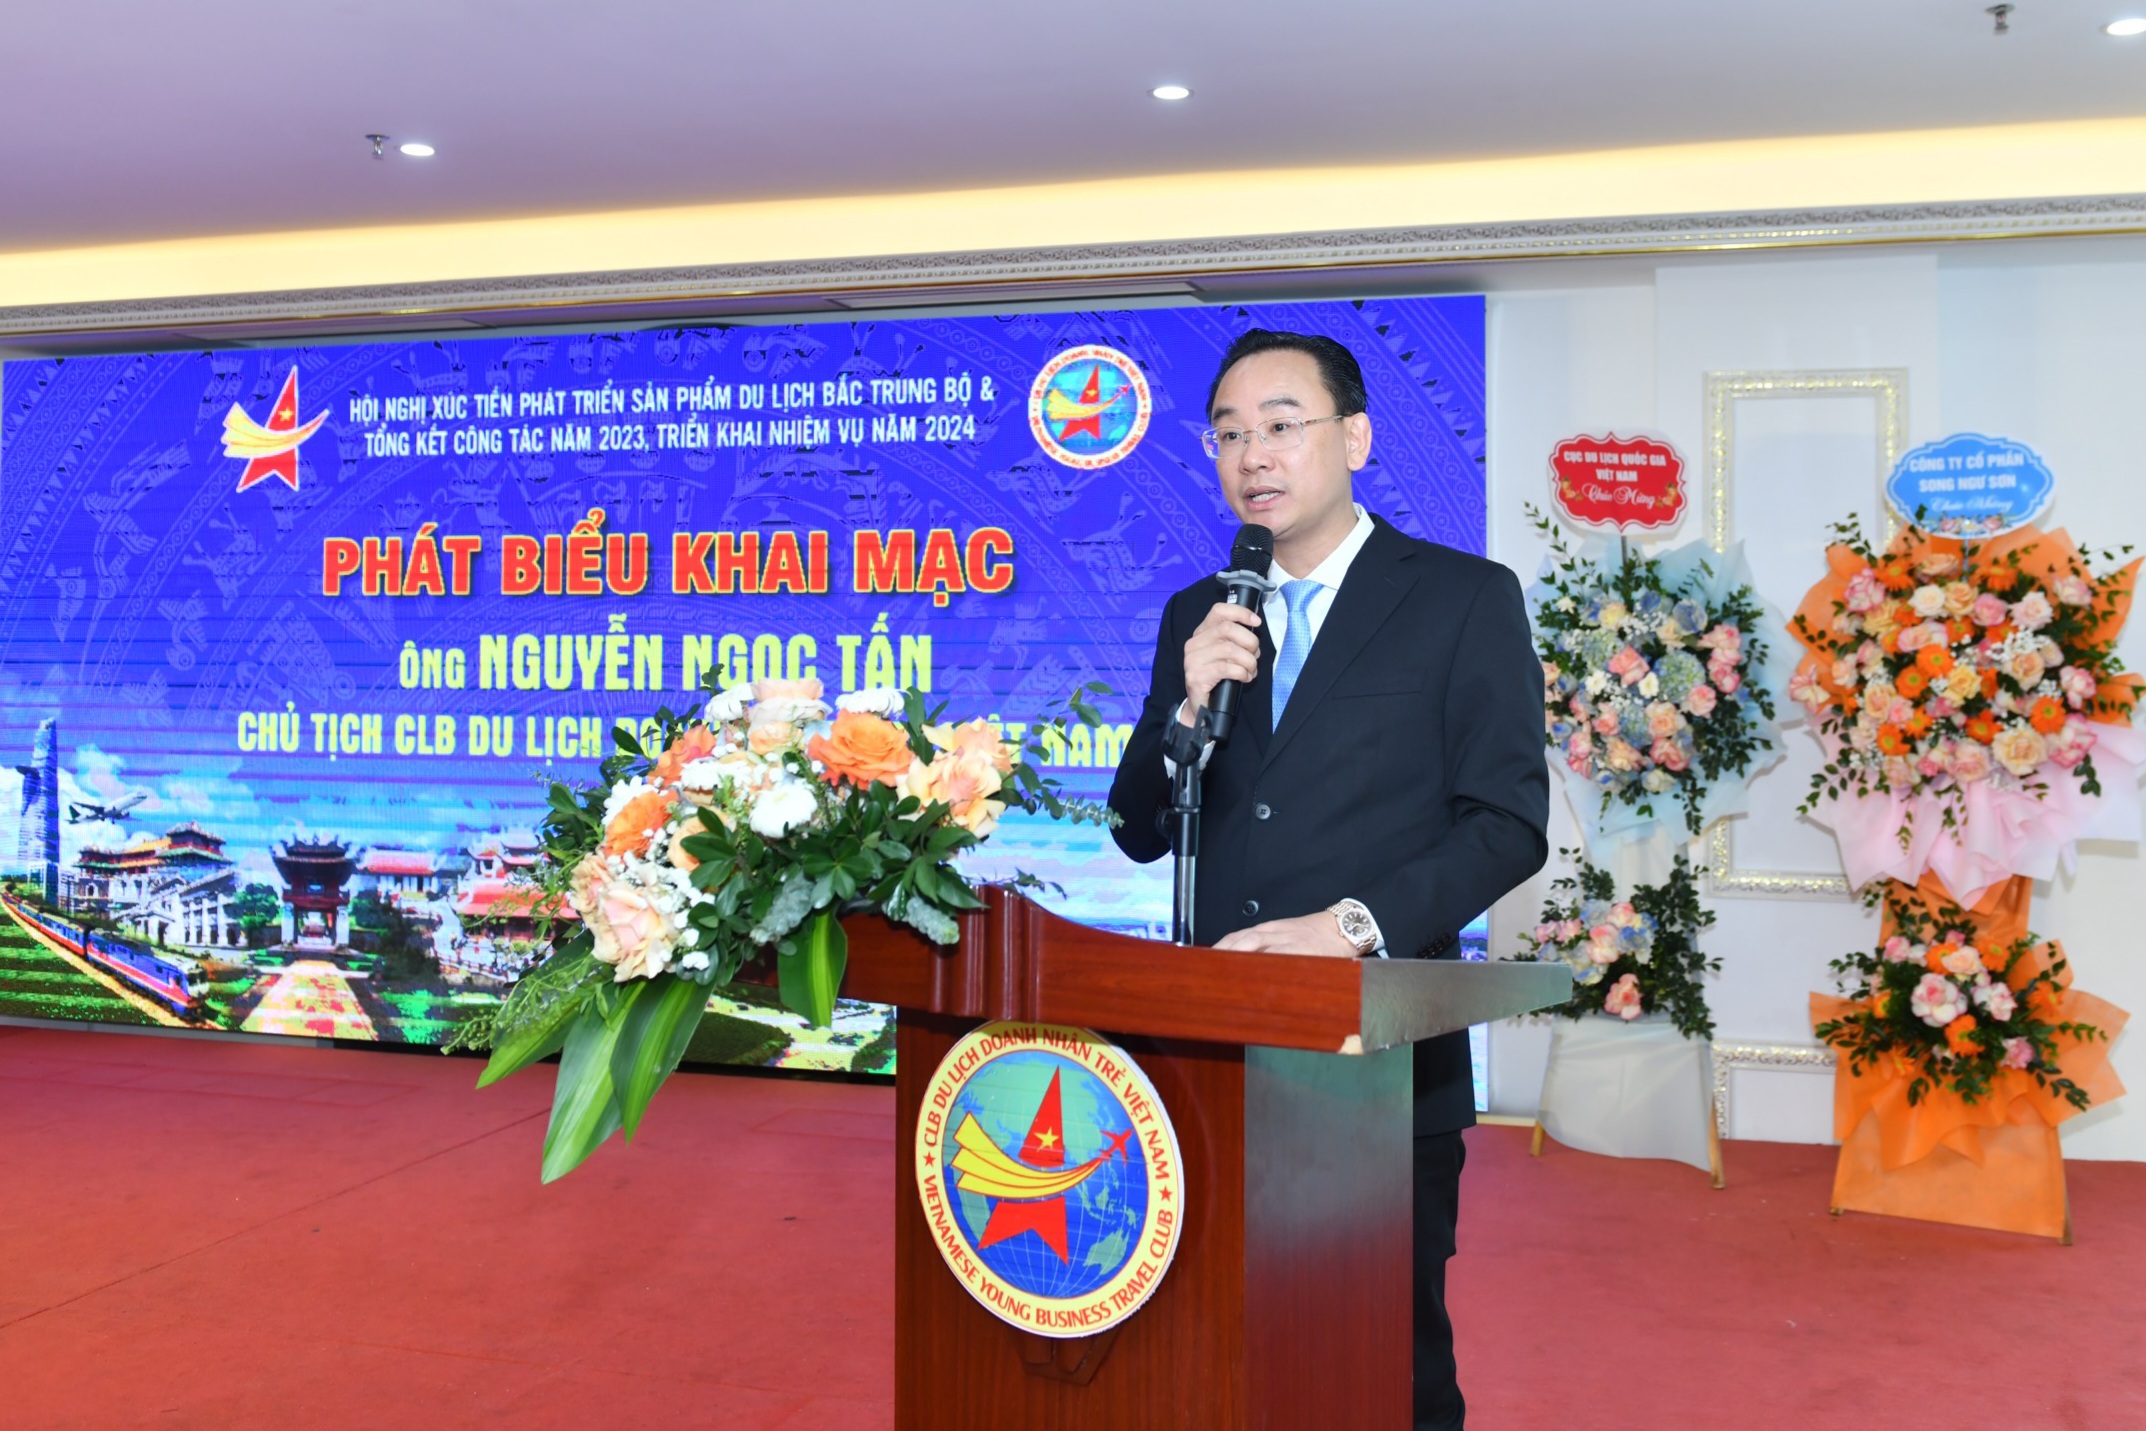 Anh Nguyễn Ngọc Tấn, Chủ tịch CLB Du lịch Doanh nhân trẻ Việt Nam phát biểu tại hội nghị.